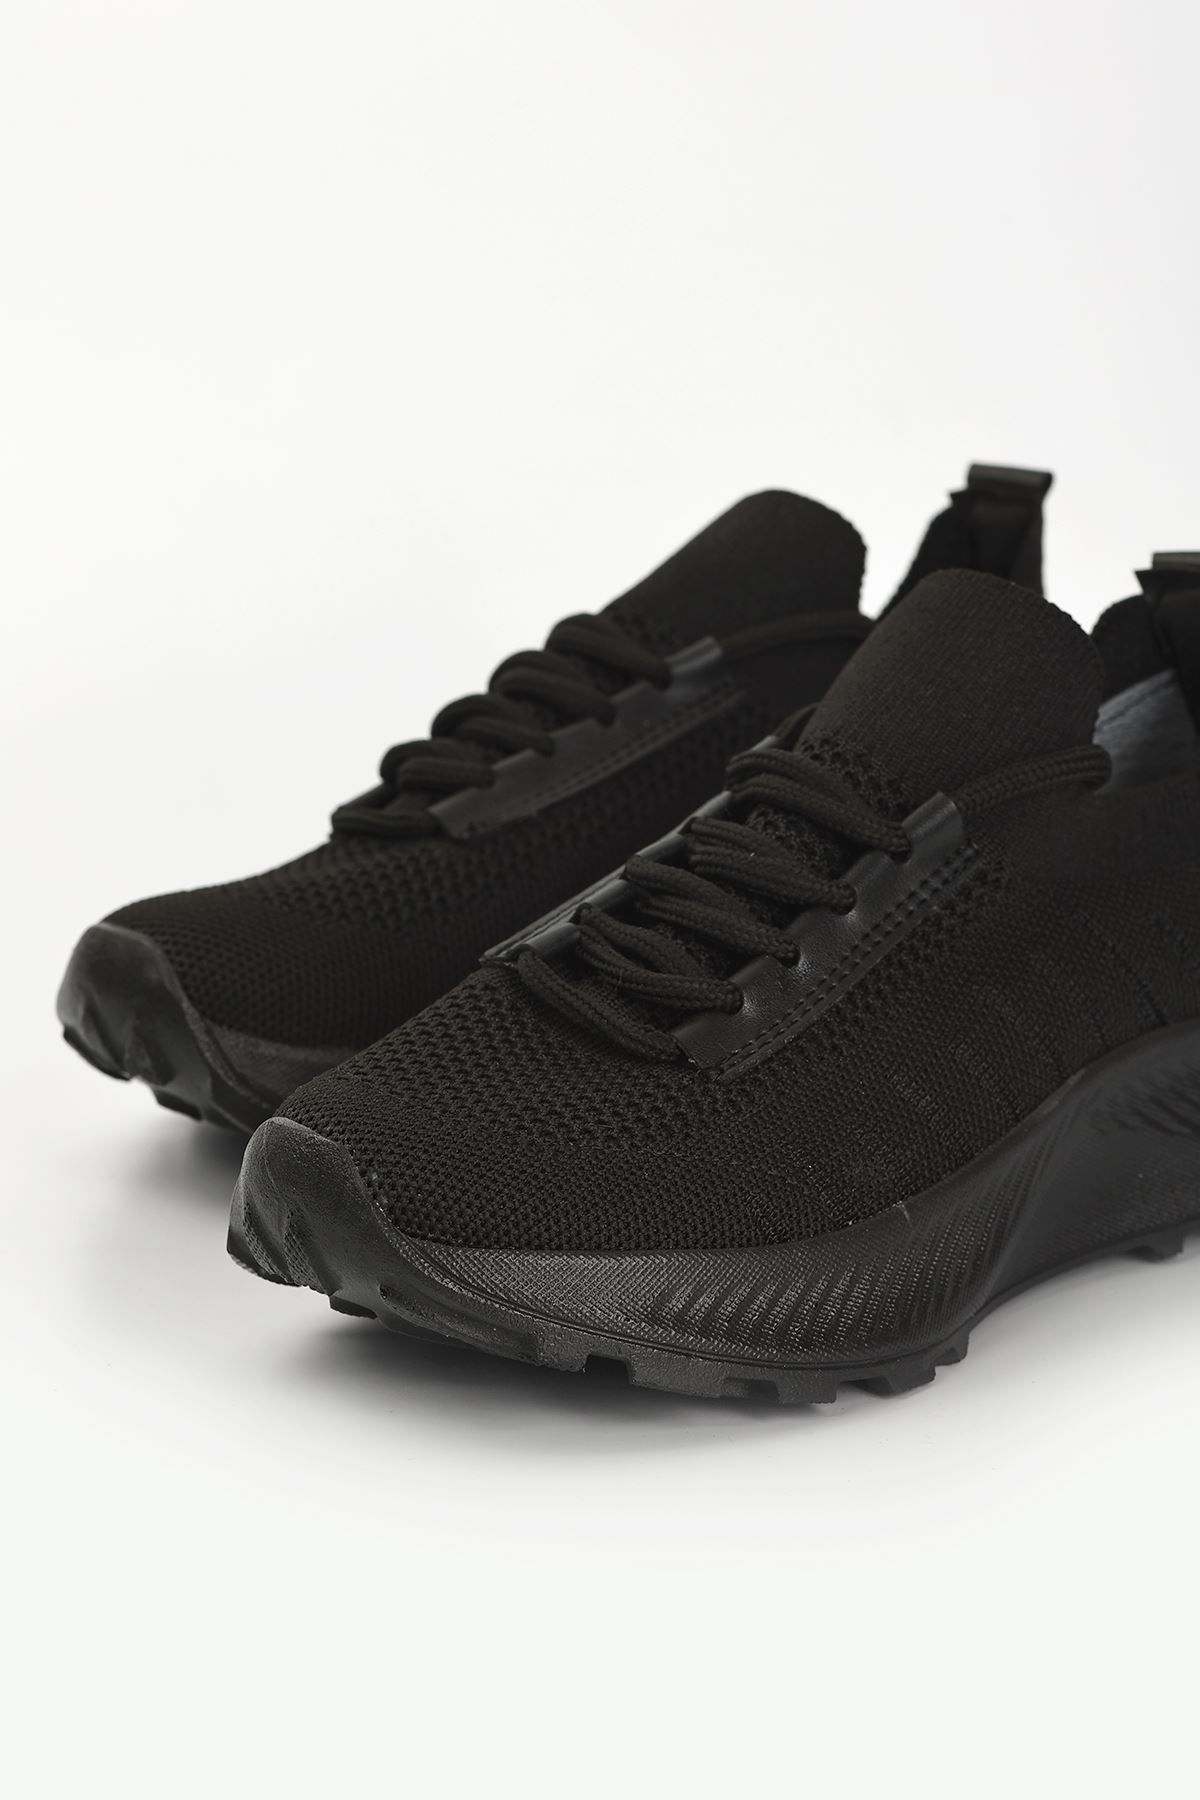 Bolonya Bağcık Detay Triko Kadın Spor Ayakkabı Siyah